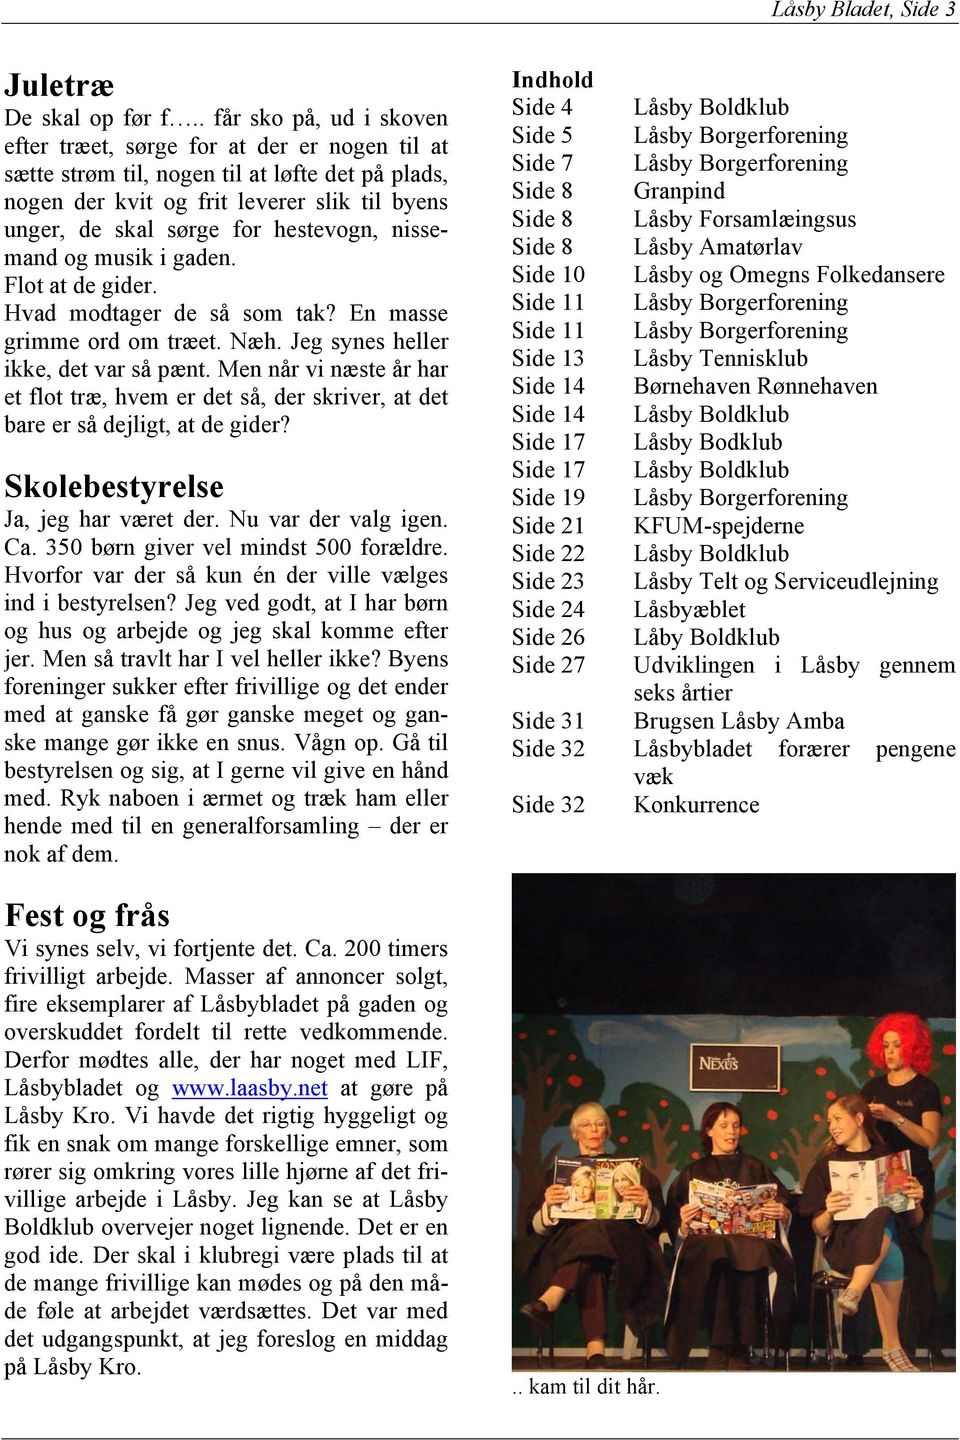 Låsbybladet. Nr. 35 Marts 2008 Årgang 9. Lokalblad for alle i Låsby og  omegn - også for dig! - PDF Gratis download